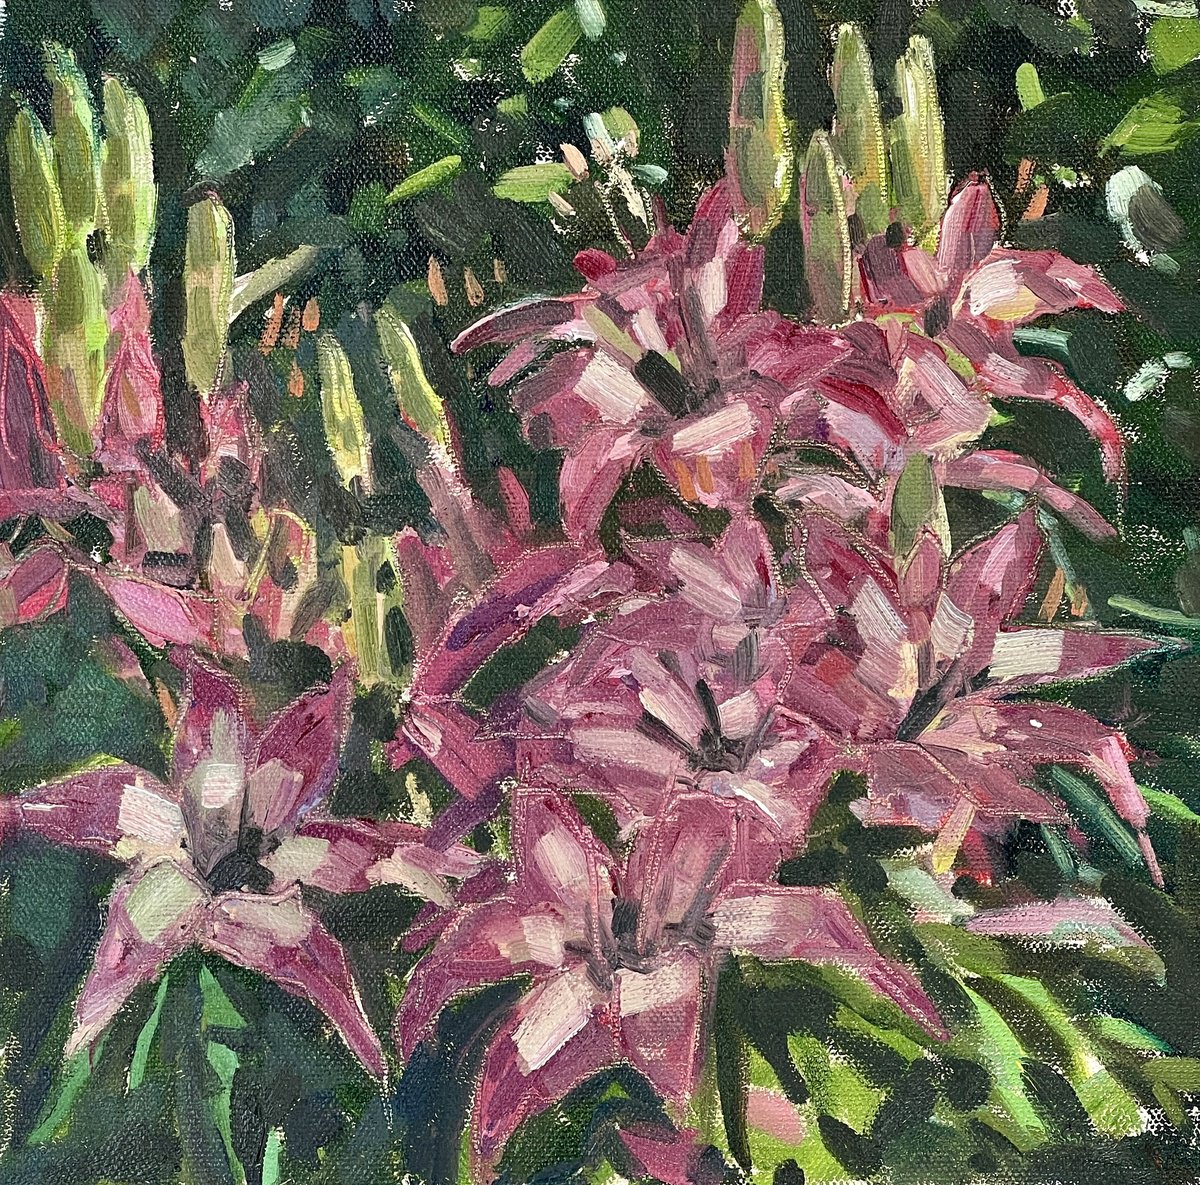 Stargazer lilies by Louise Gillard